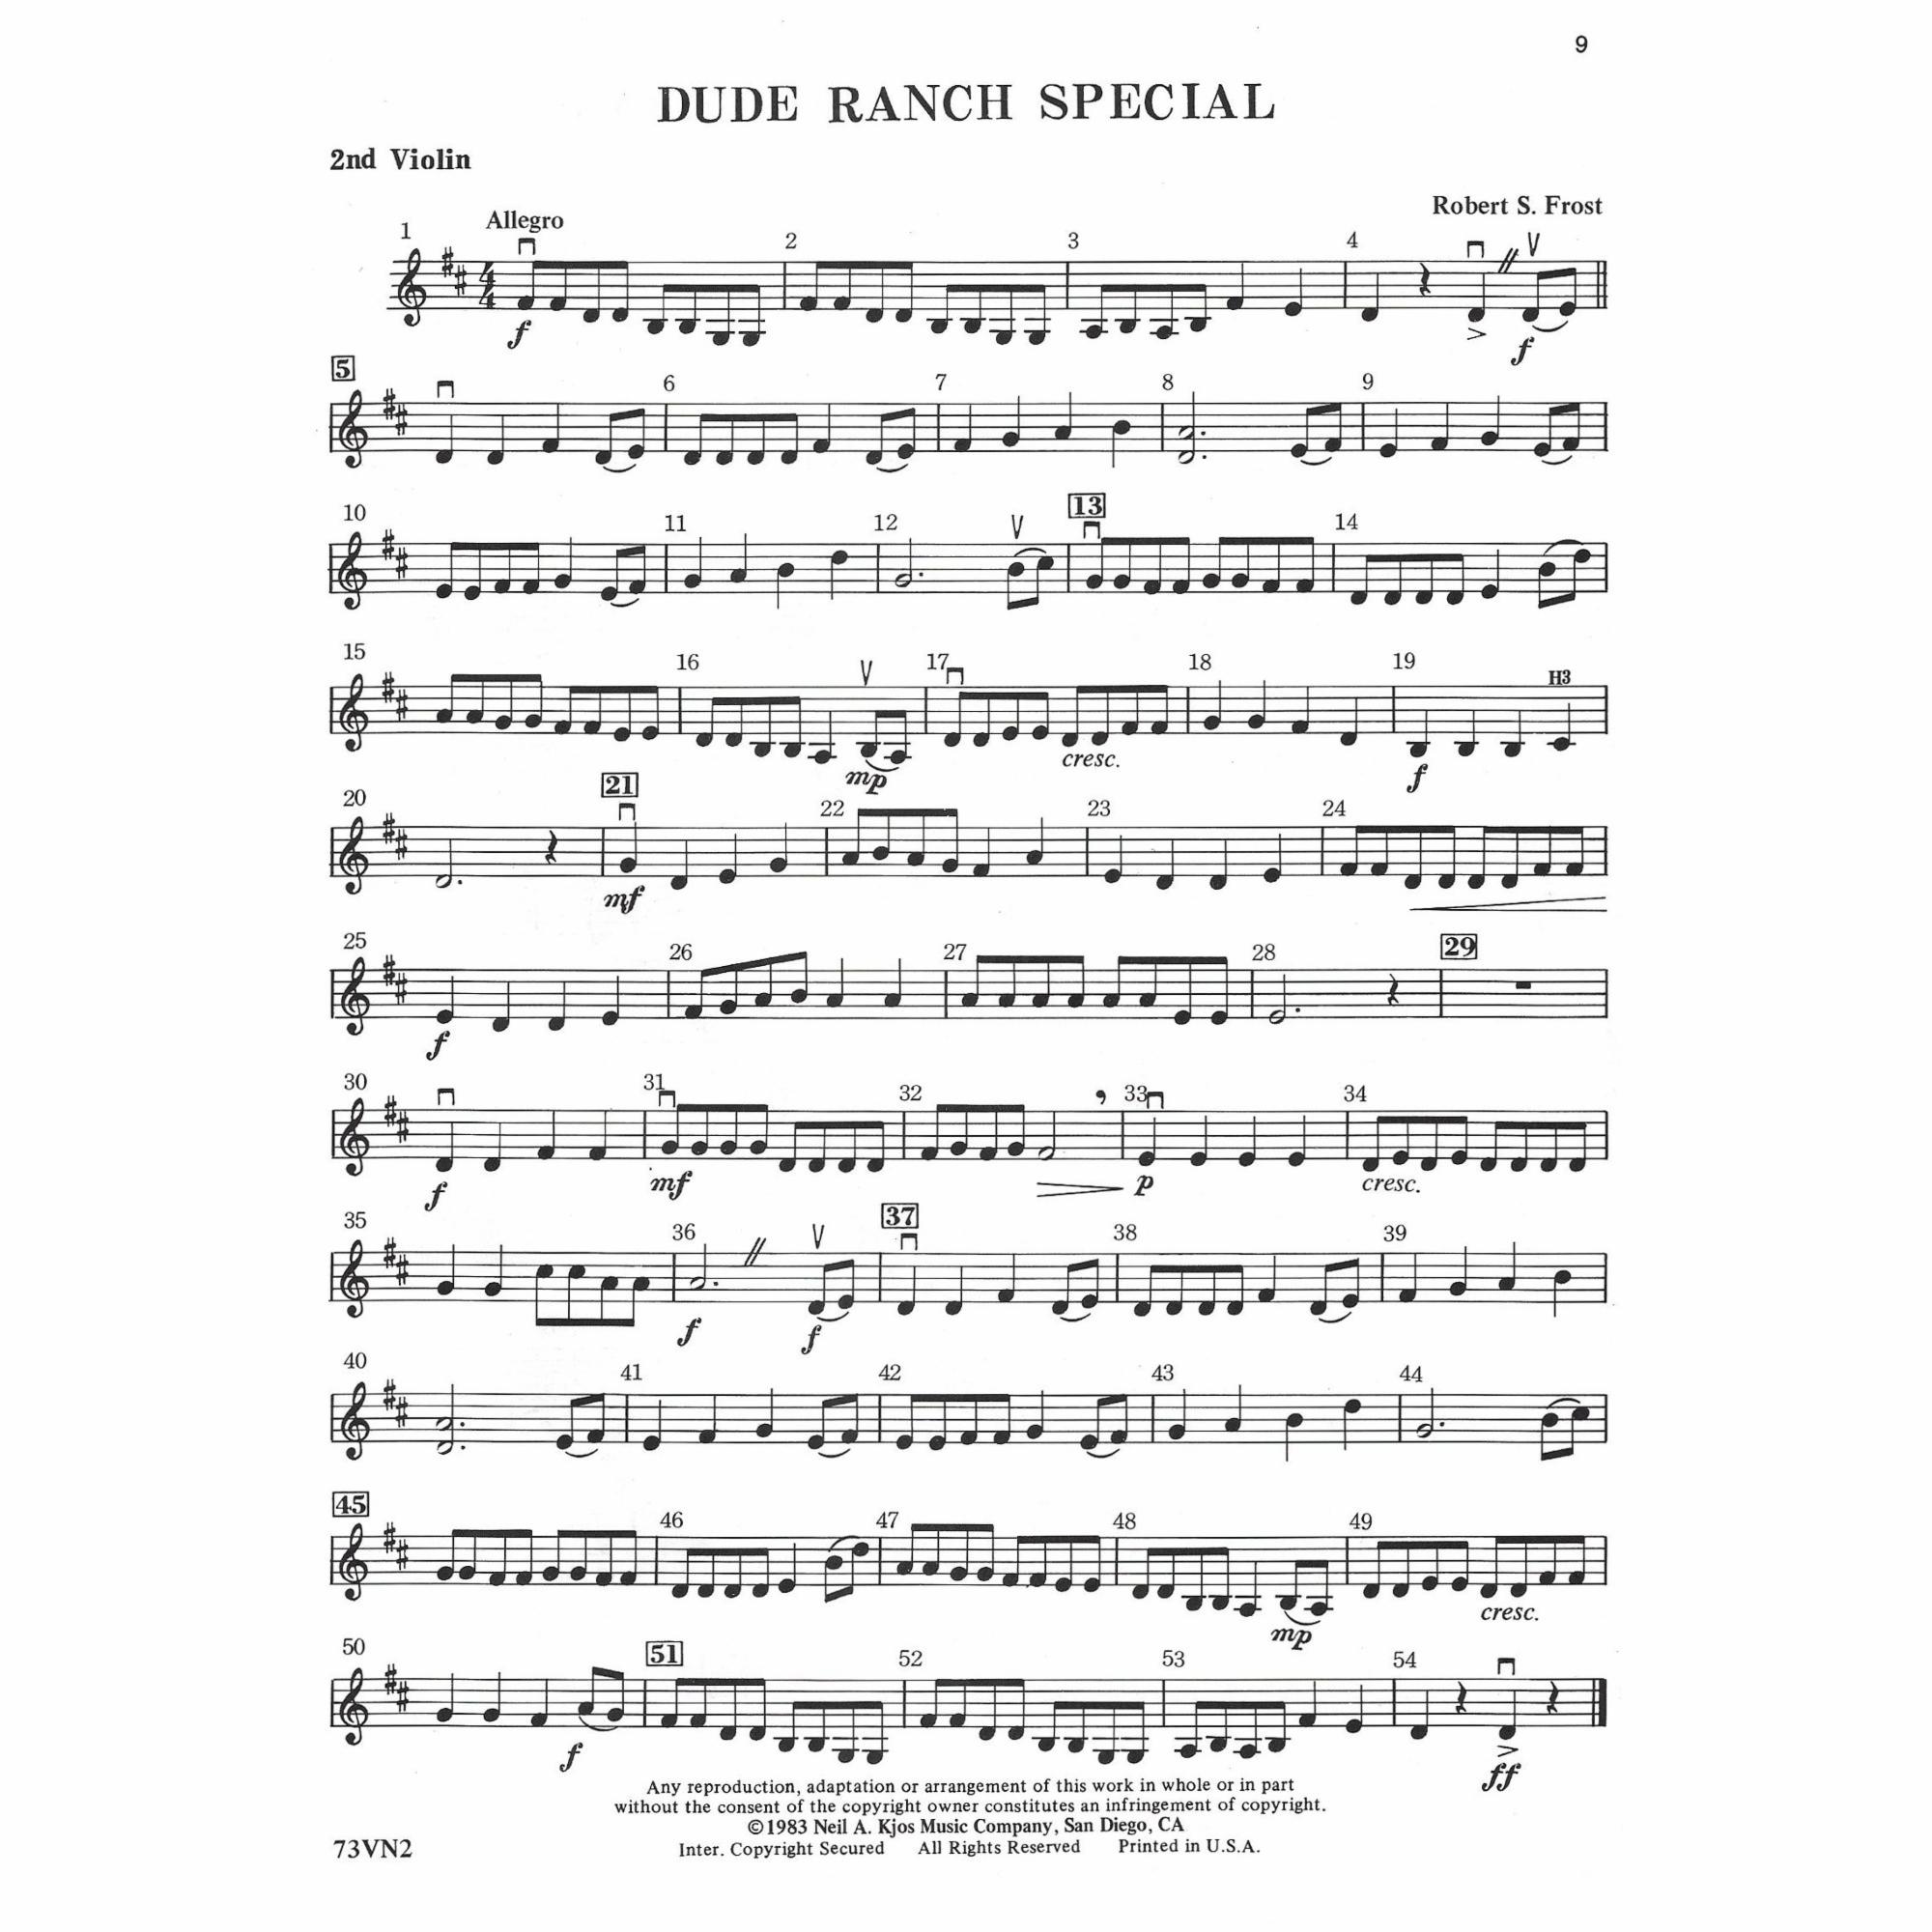 Sample: Violin 2 (Pg. 9)